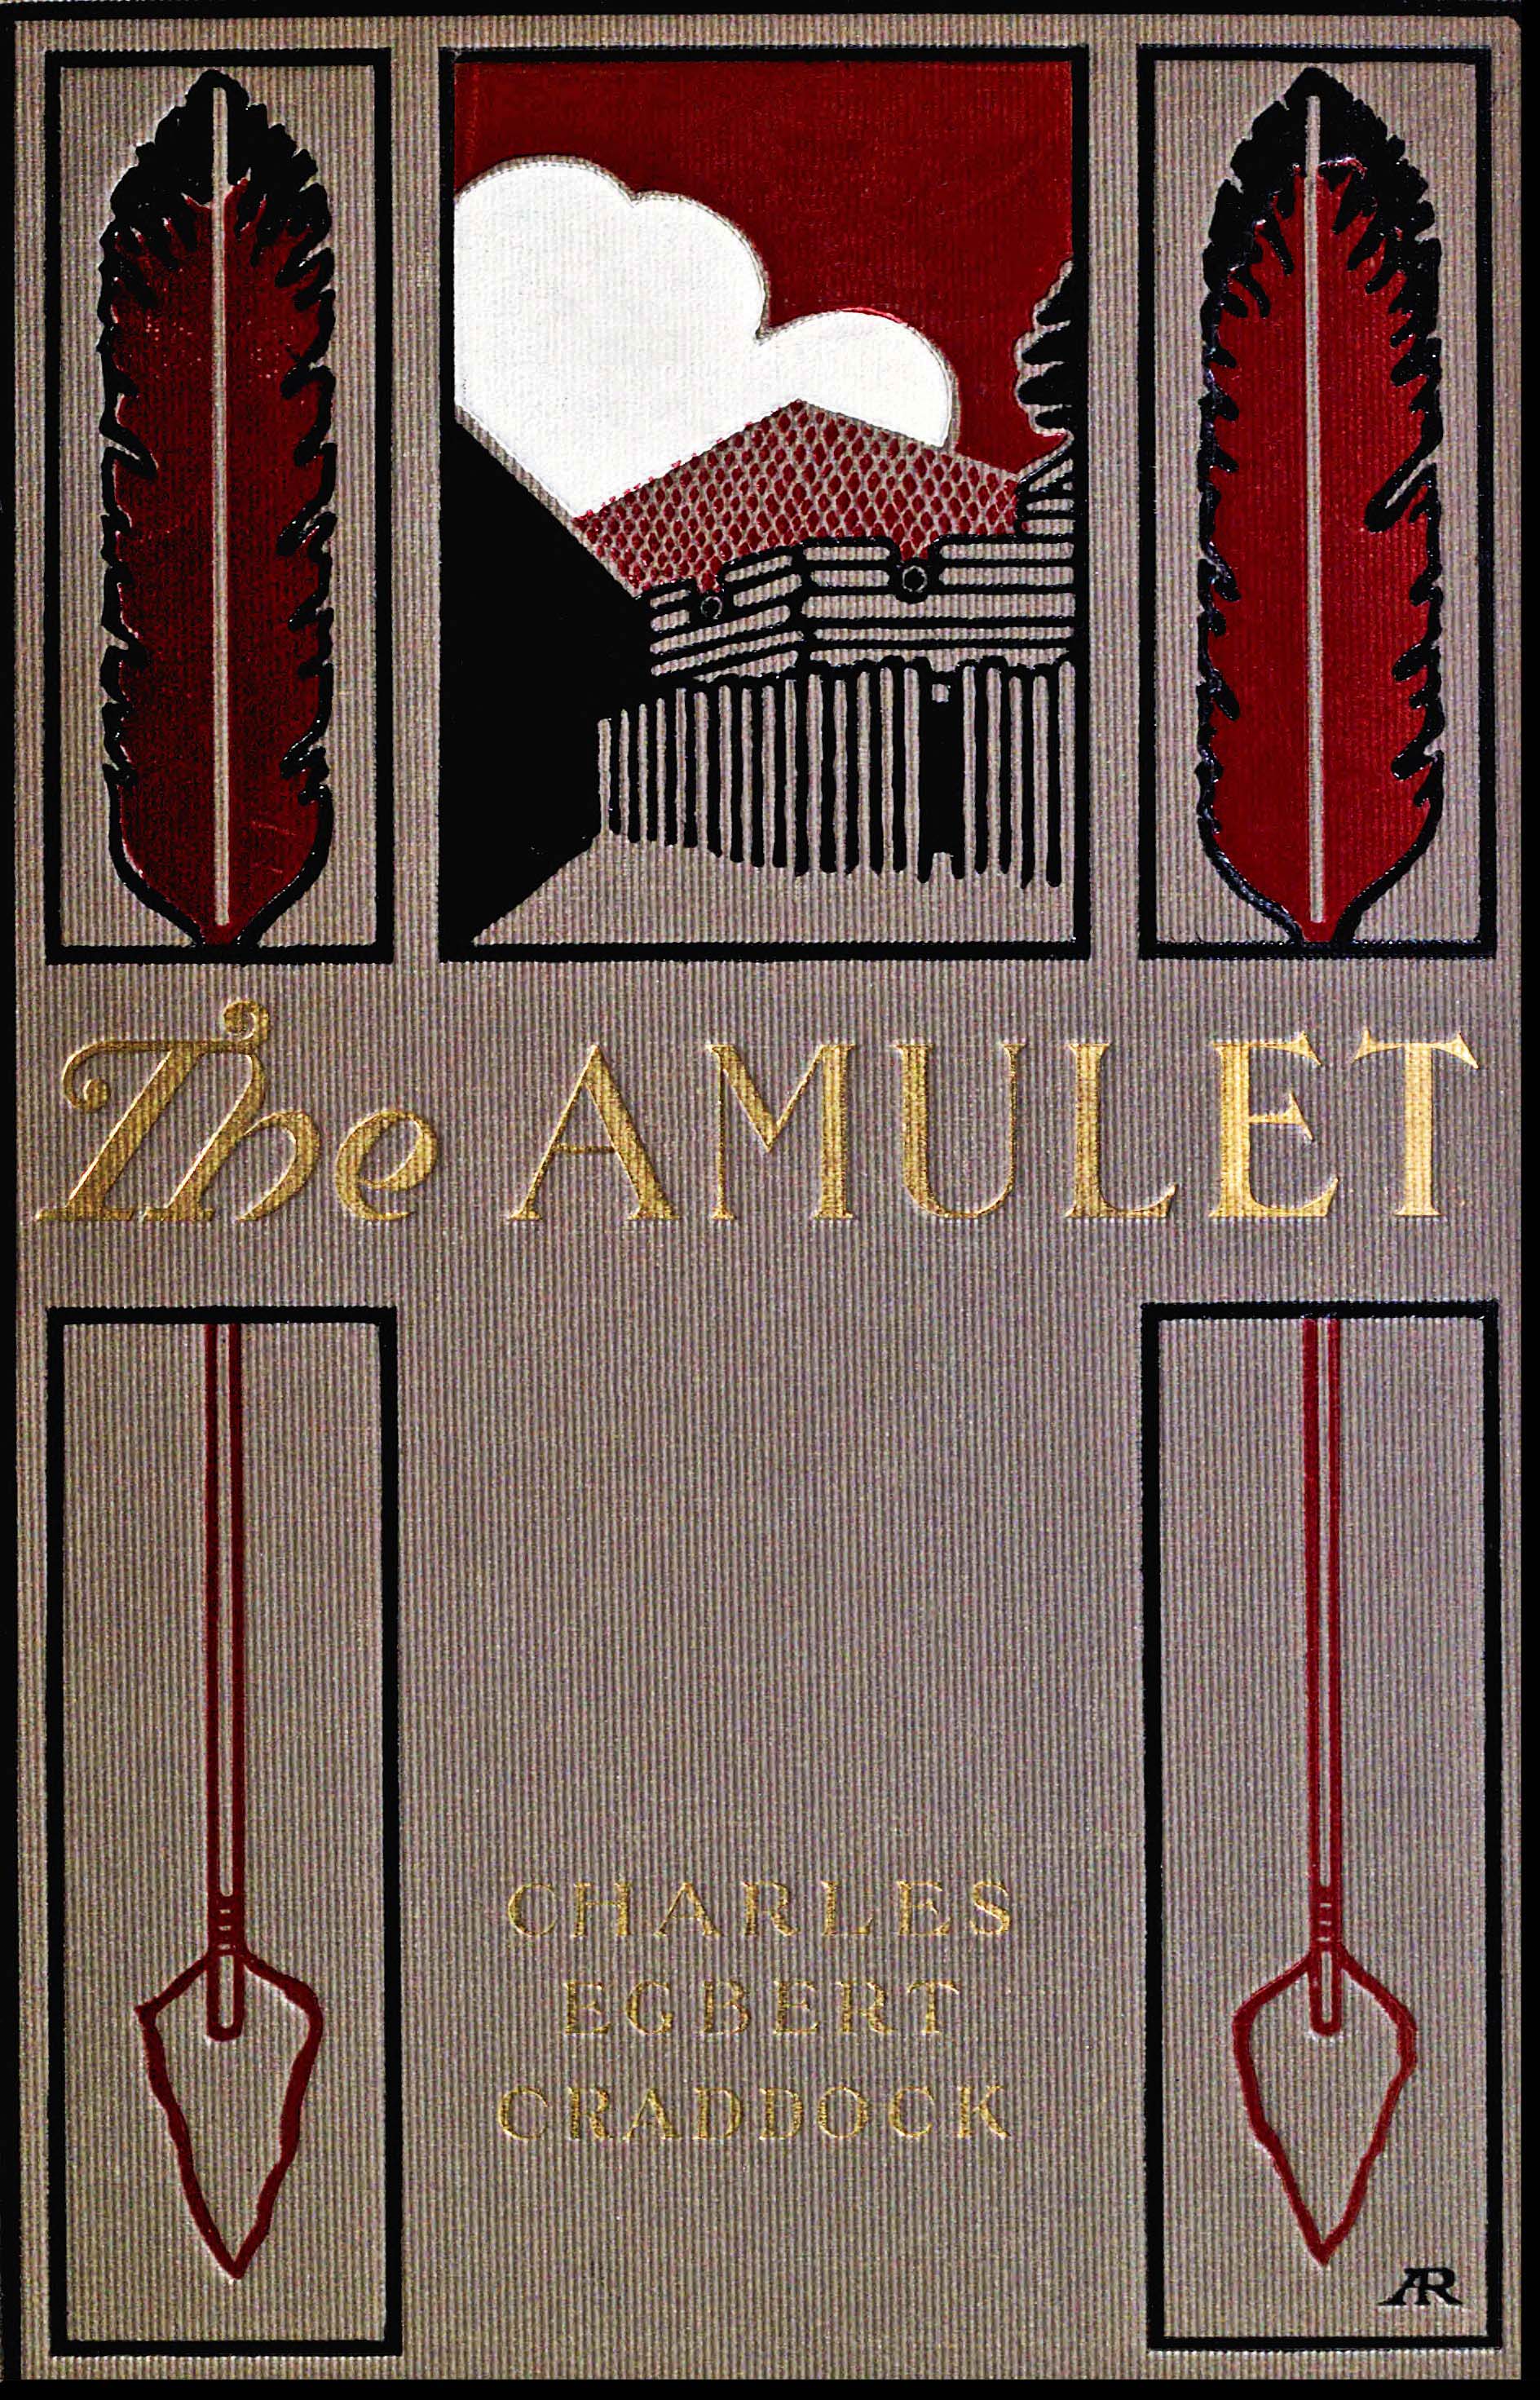 The amulet: A novel